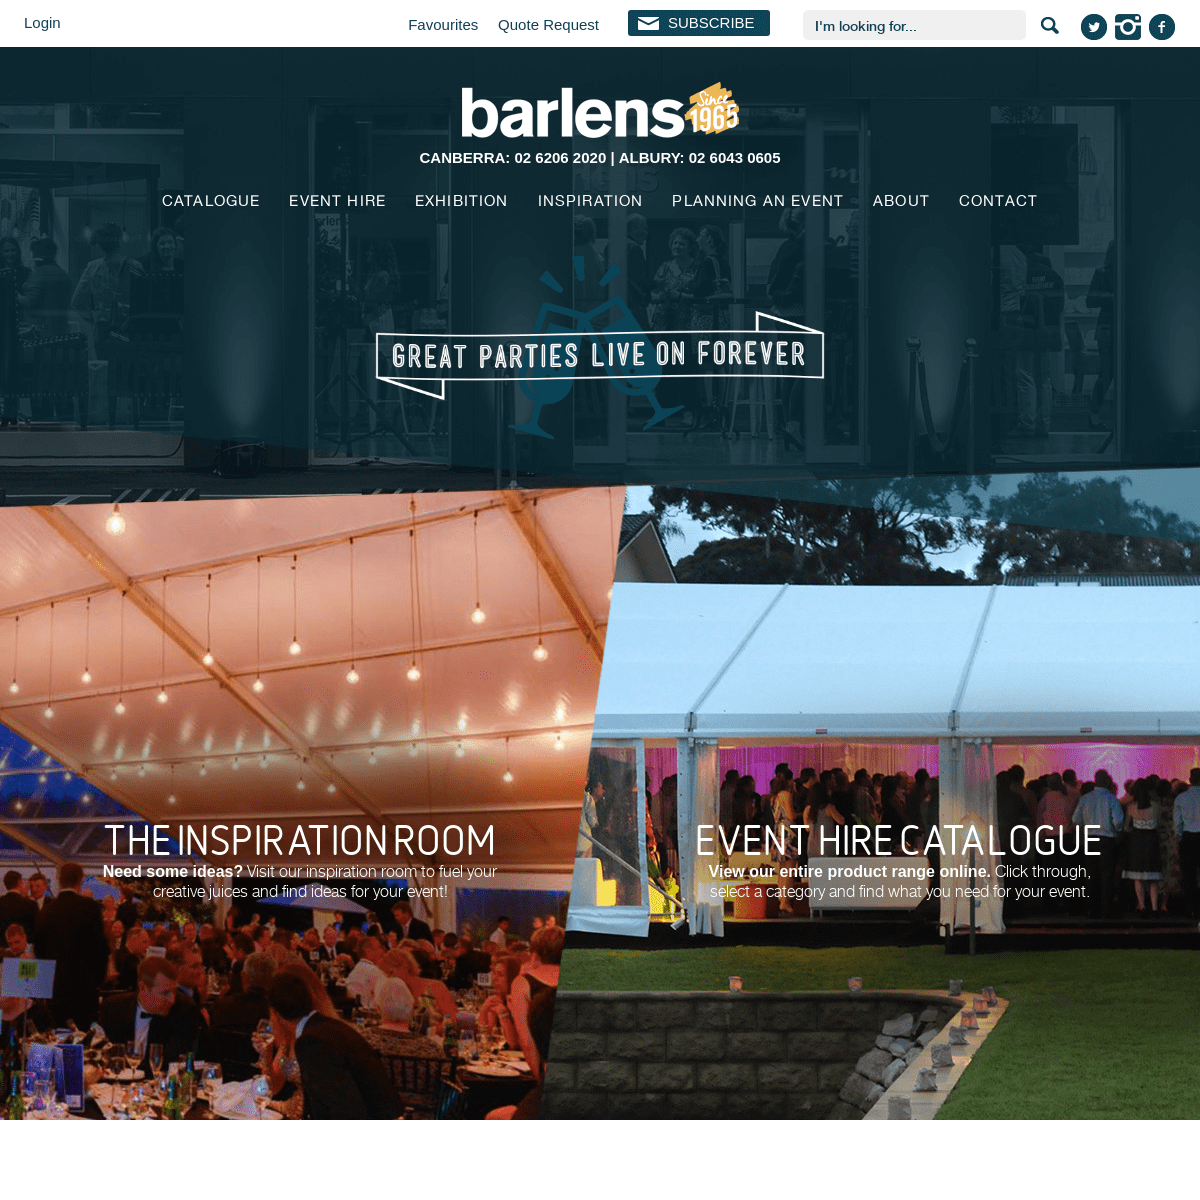 A complete backup of barlens.com.au